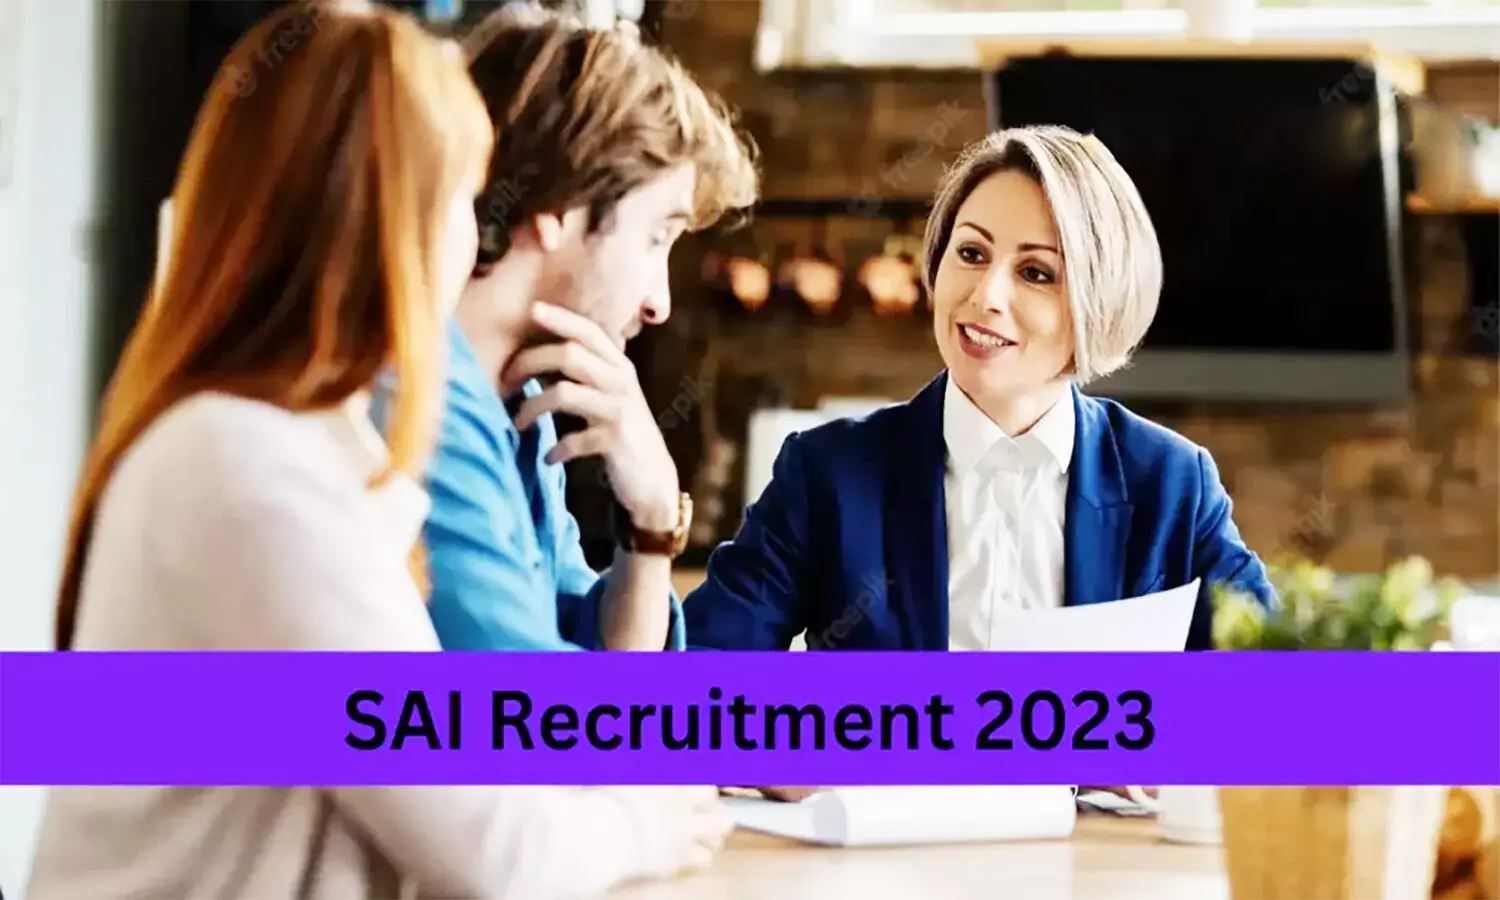 SAI Recruitment 2023: स्पोर्ट्स अथॉरिटी ऑफ इंडिया वैकेंसी की आवेदन तिथि बढ़ी, कब तक कर सकेंगे अप्लाई जान लें